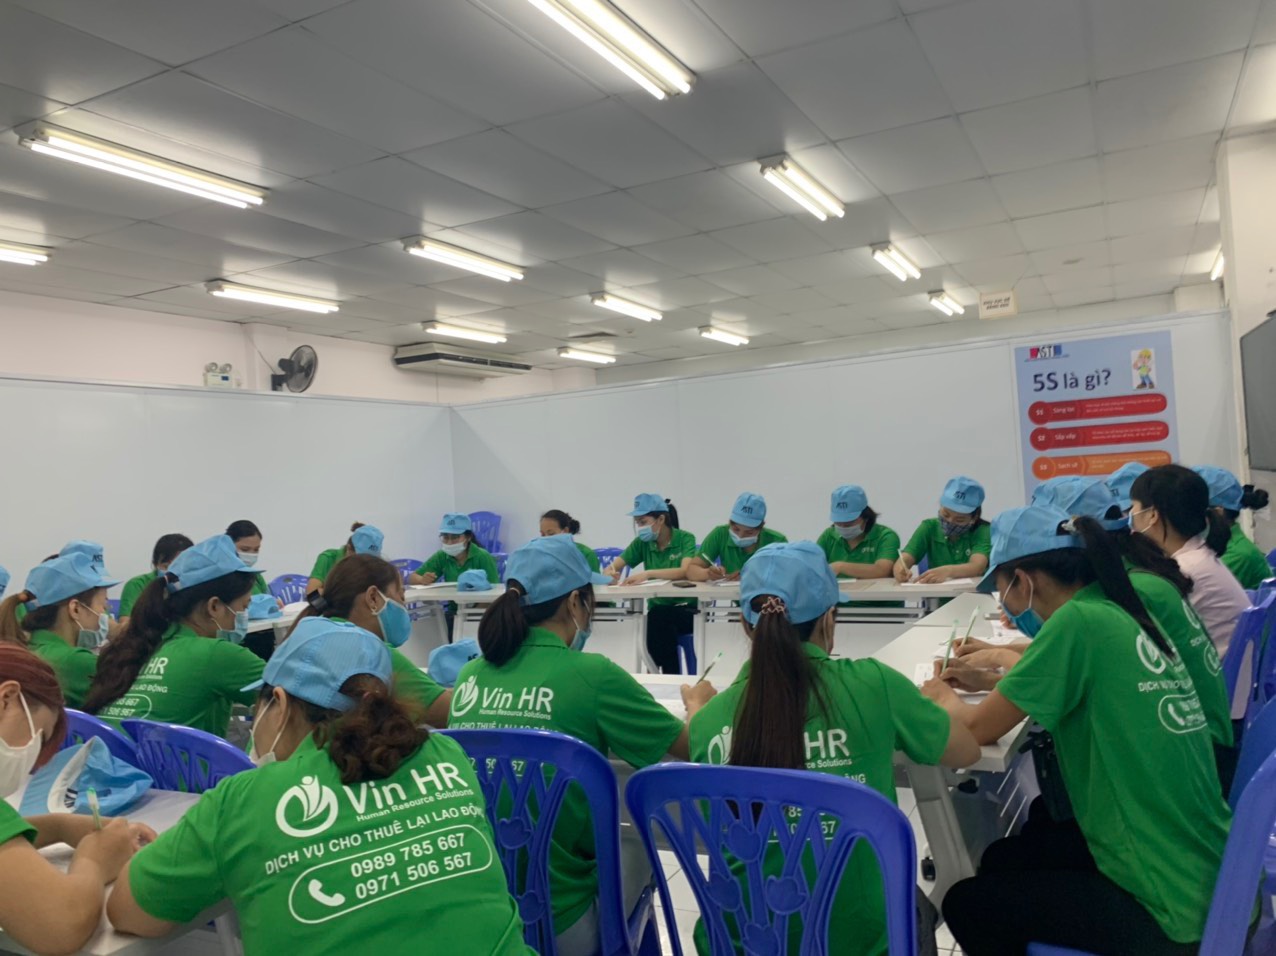 Vin HR cung cấp dịch vụ cung ứng nhân lực tại KCN Phú Bài